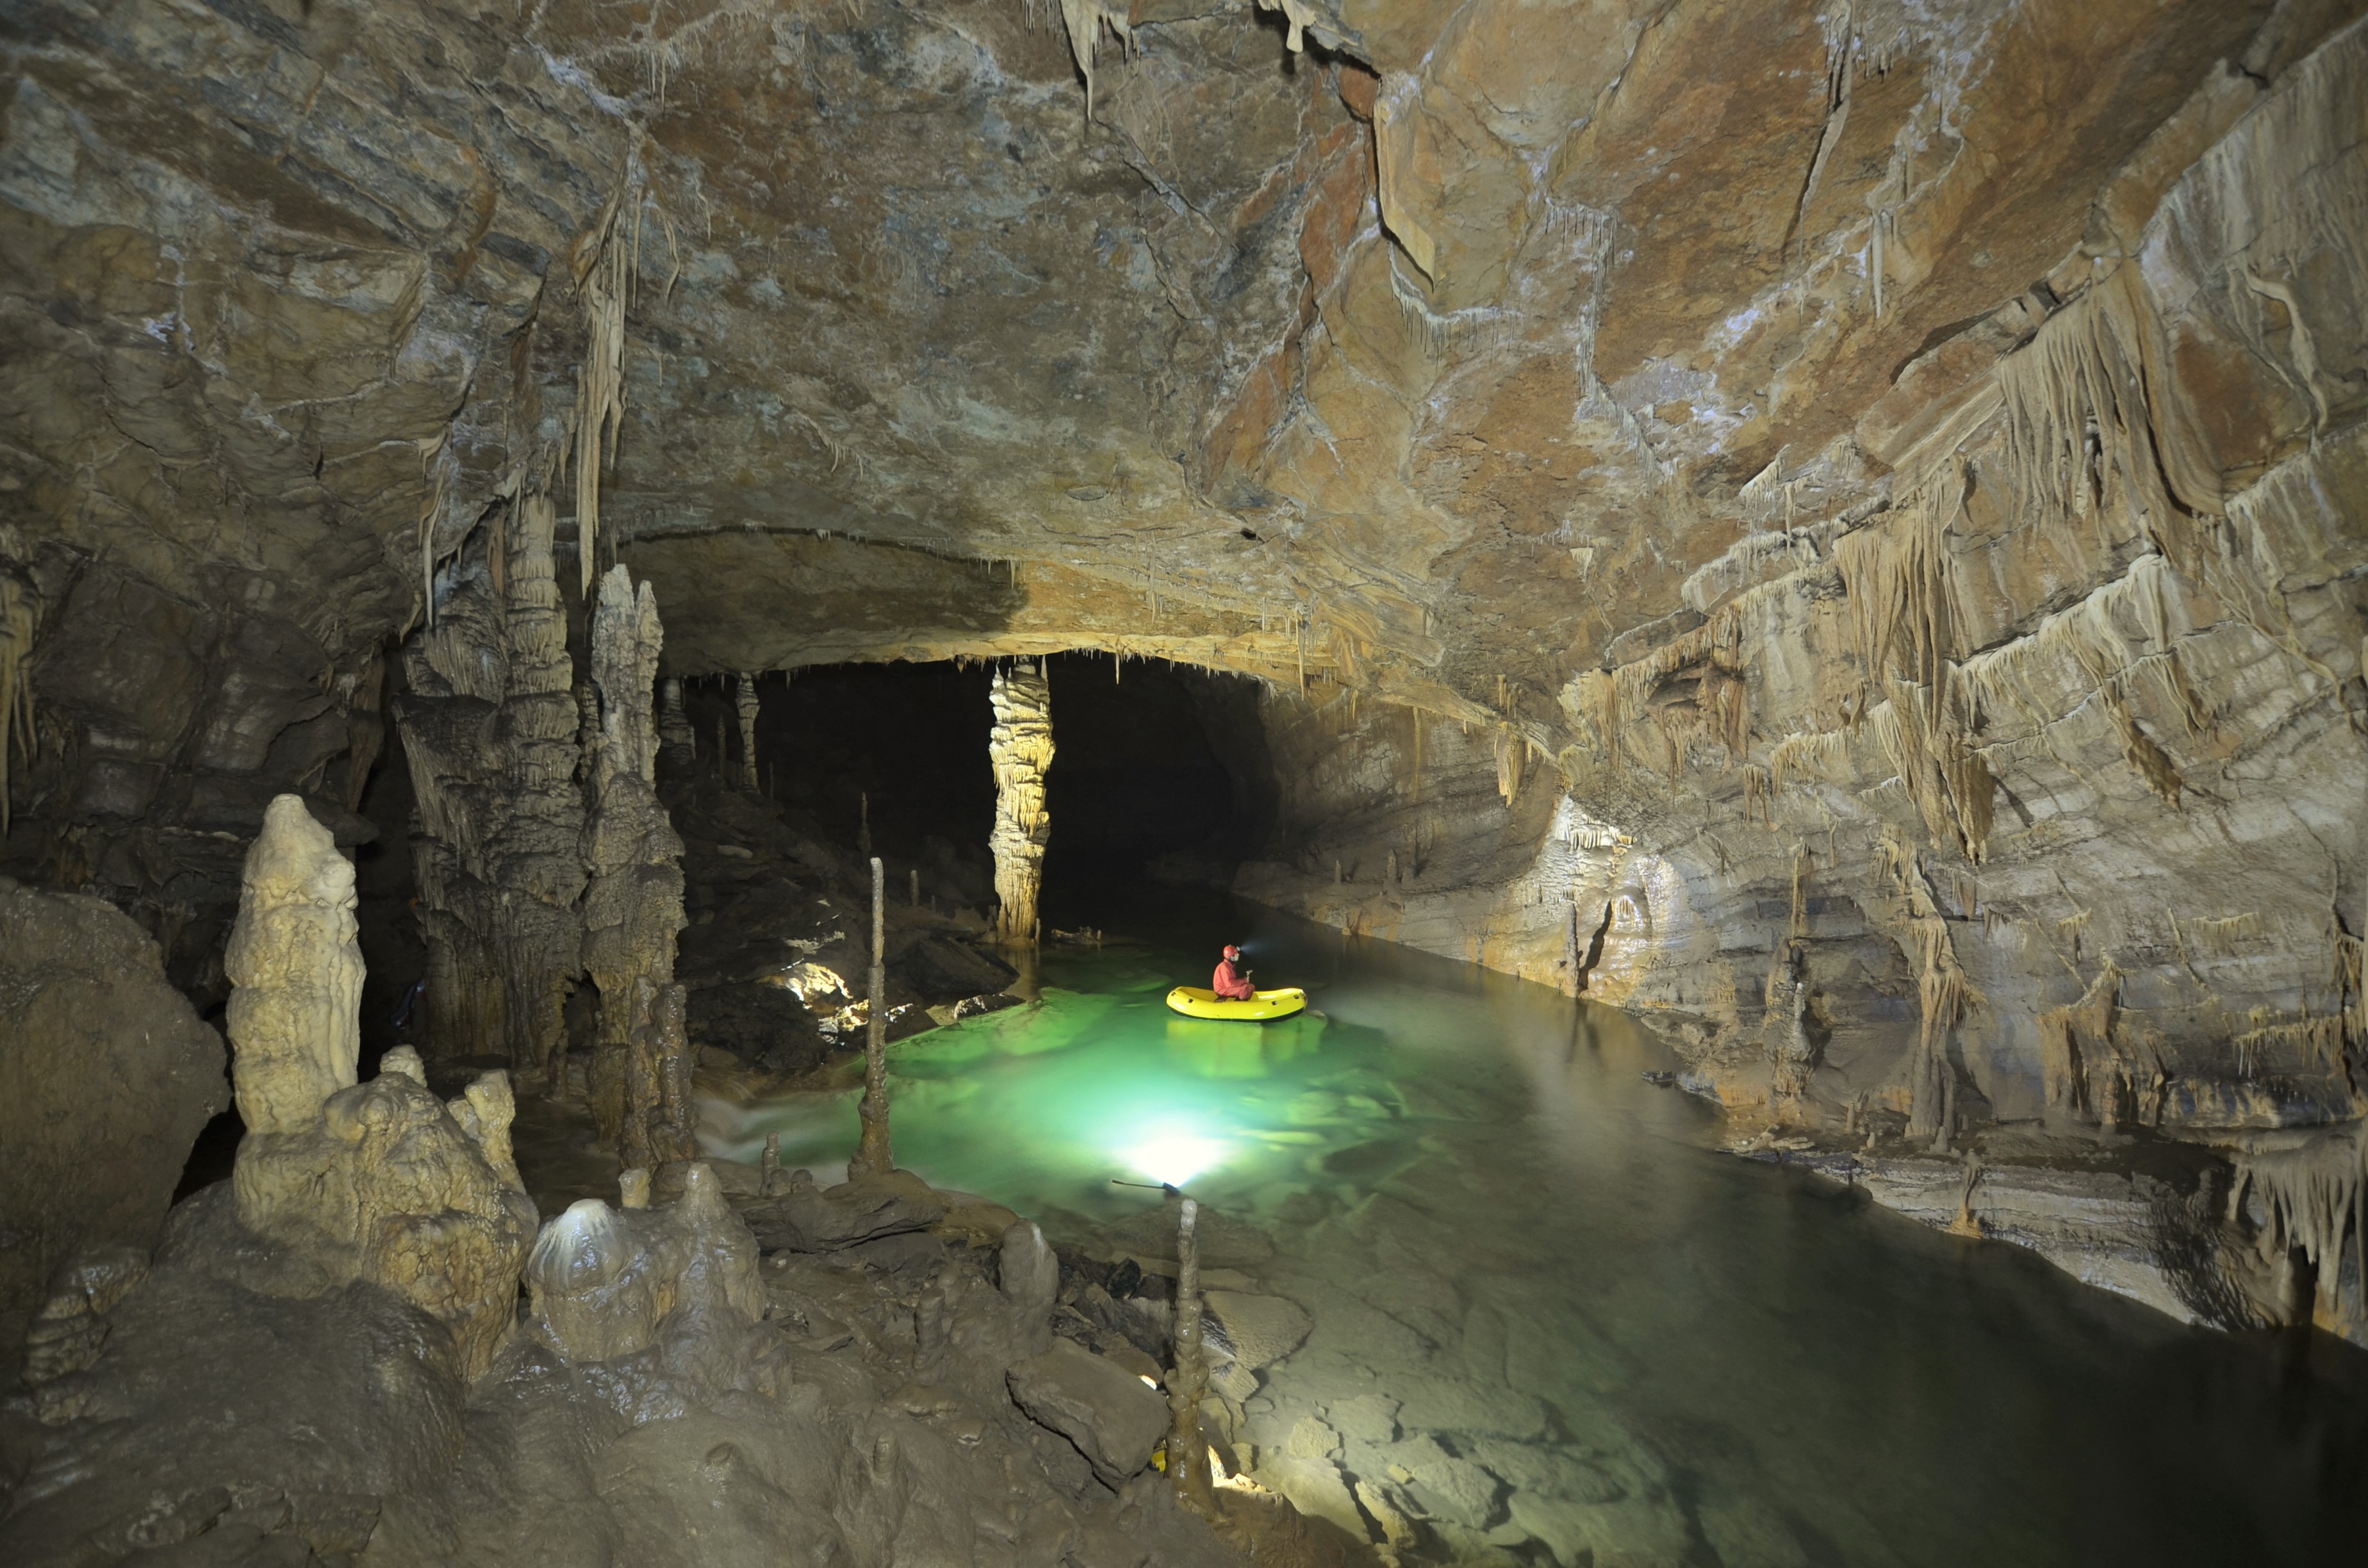 Križna jama - The Križna jama cave, Slovenia